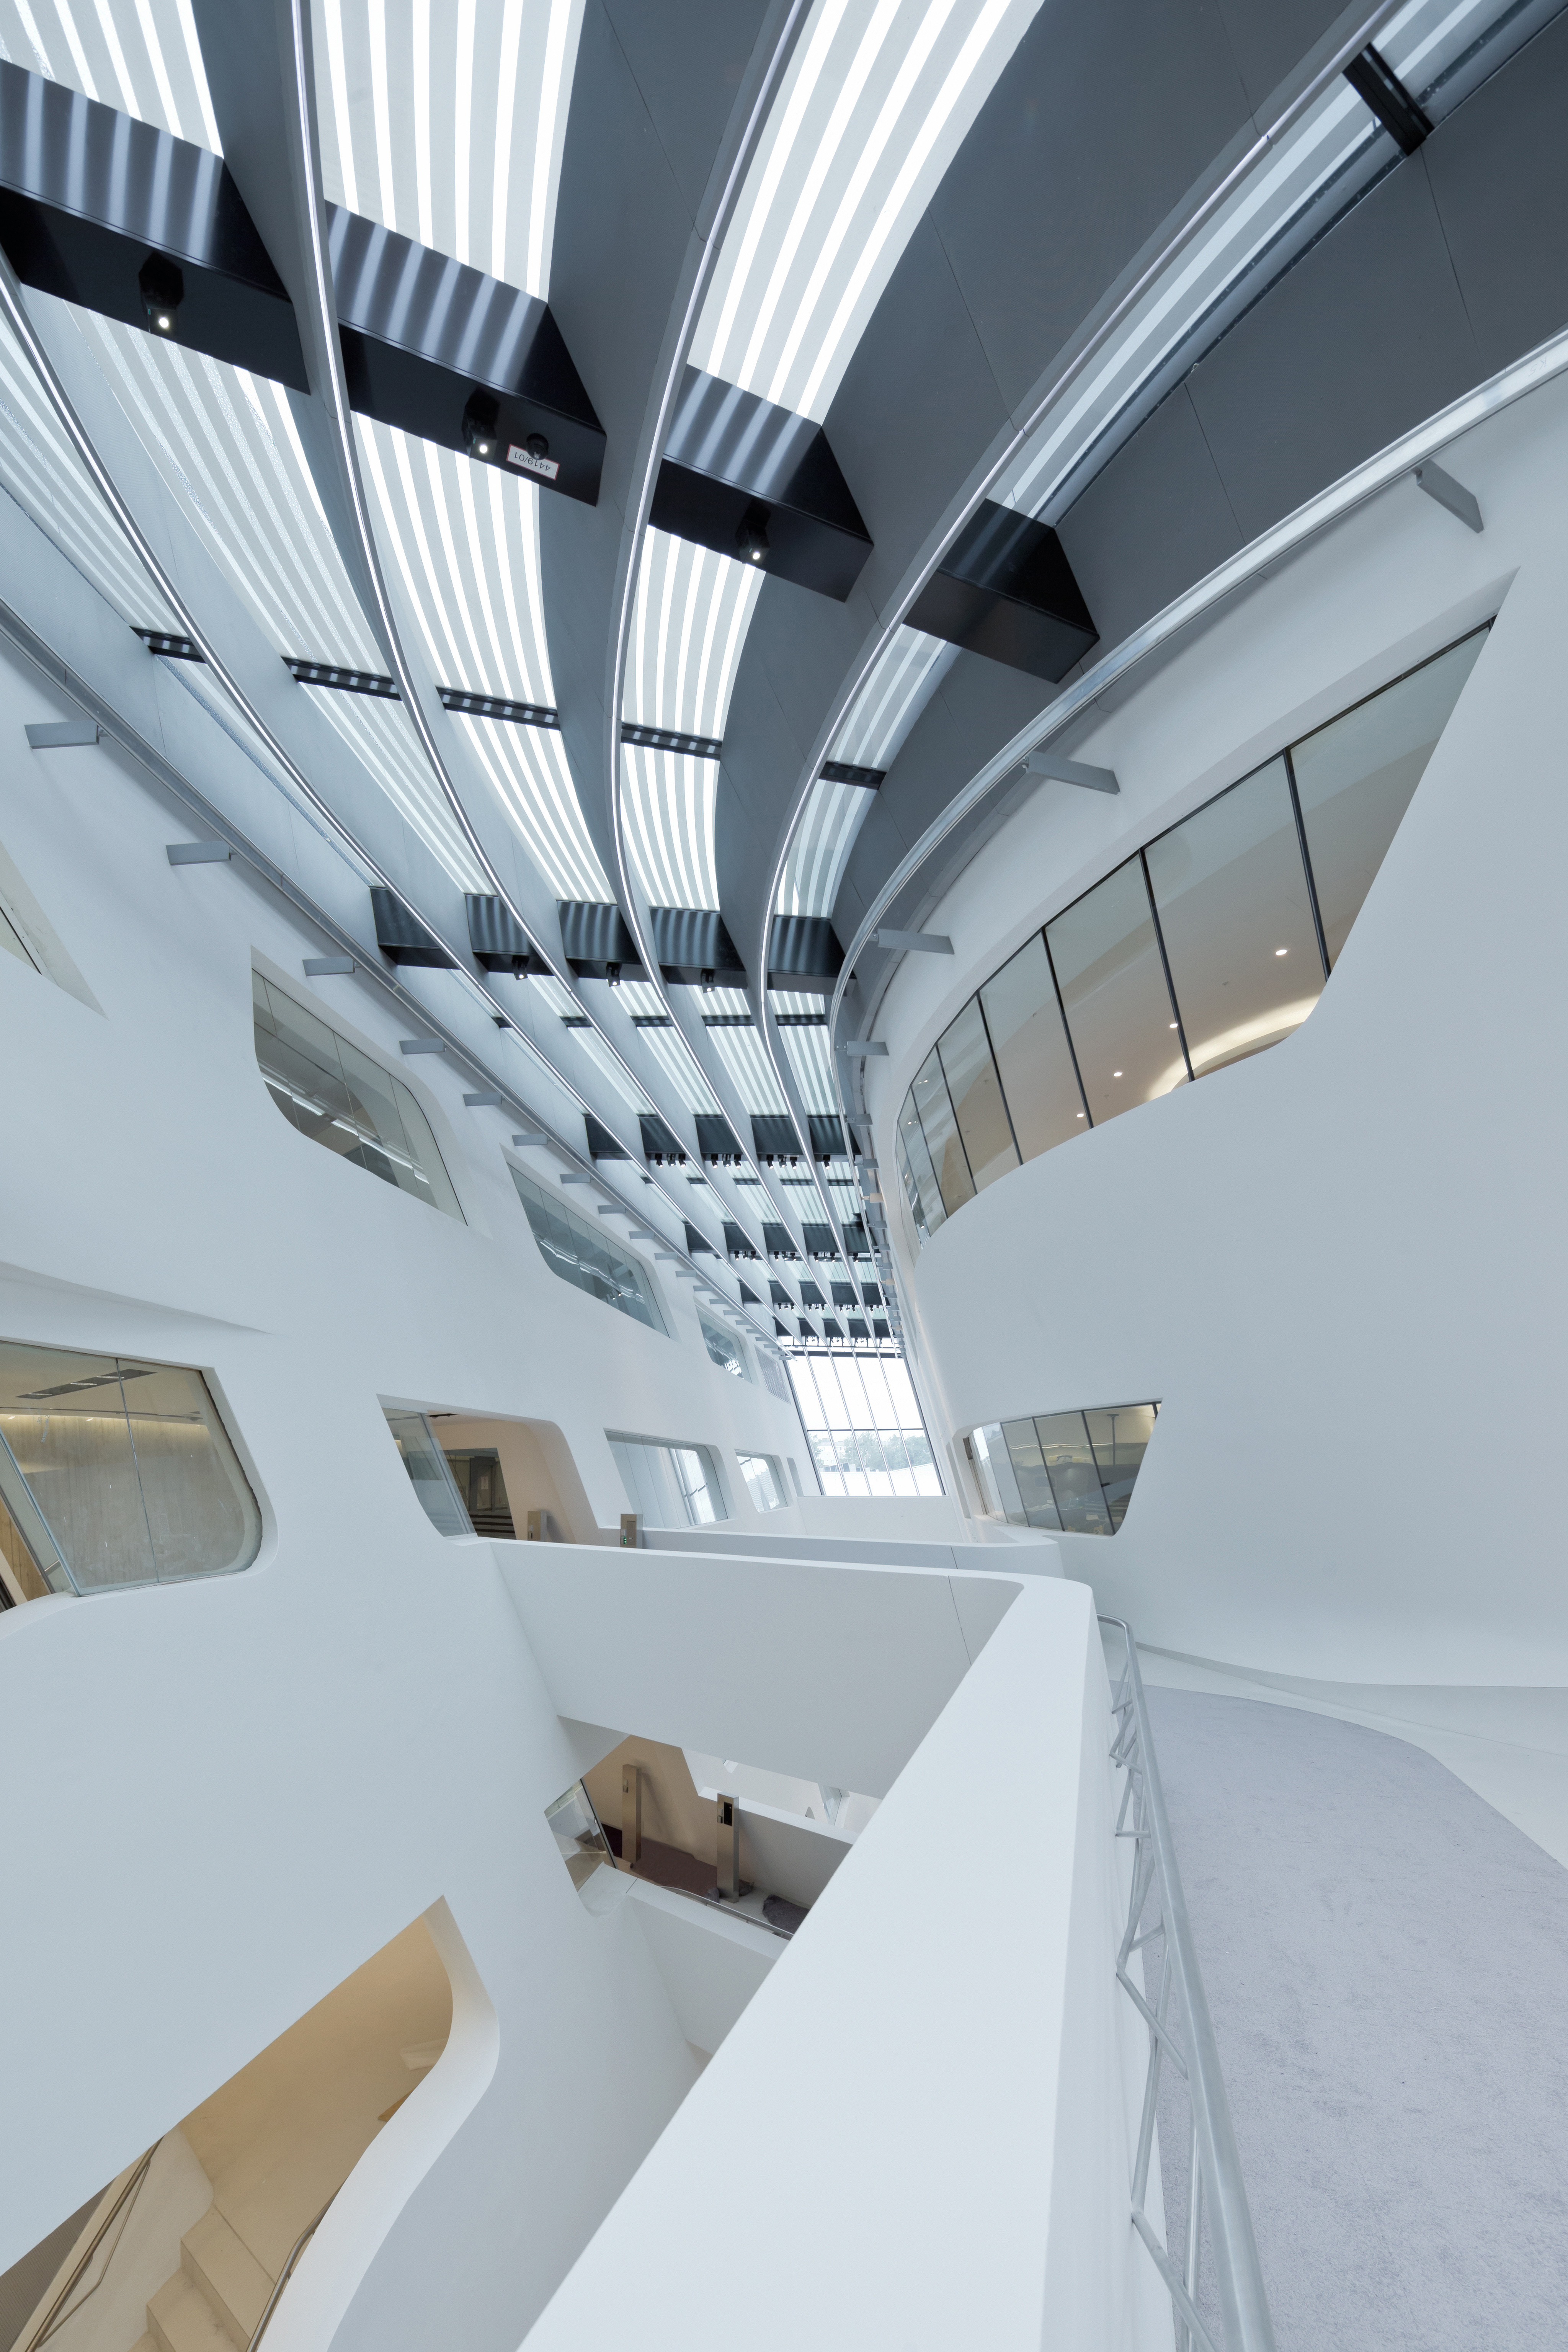 Zaha Hadid 的太空感建築